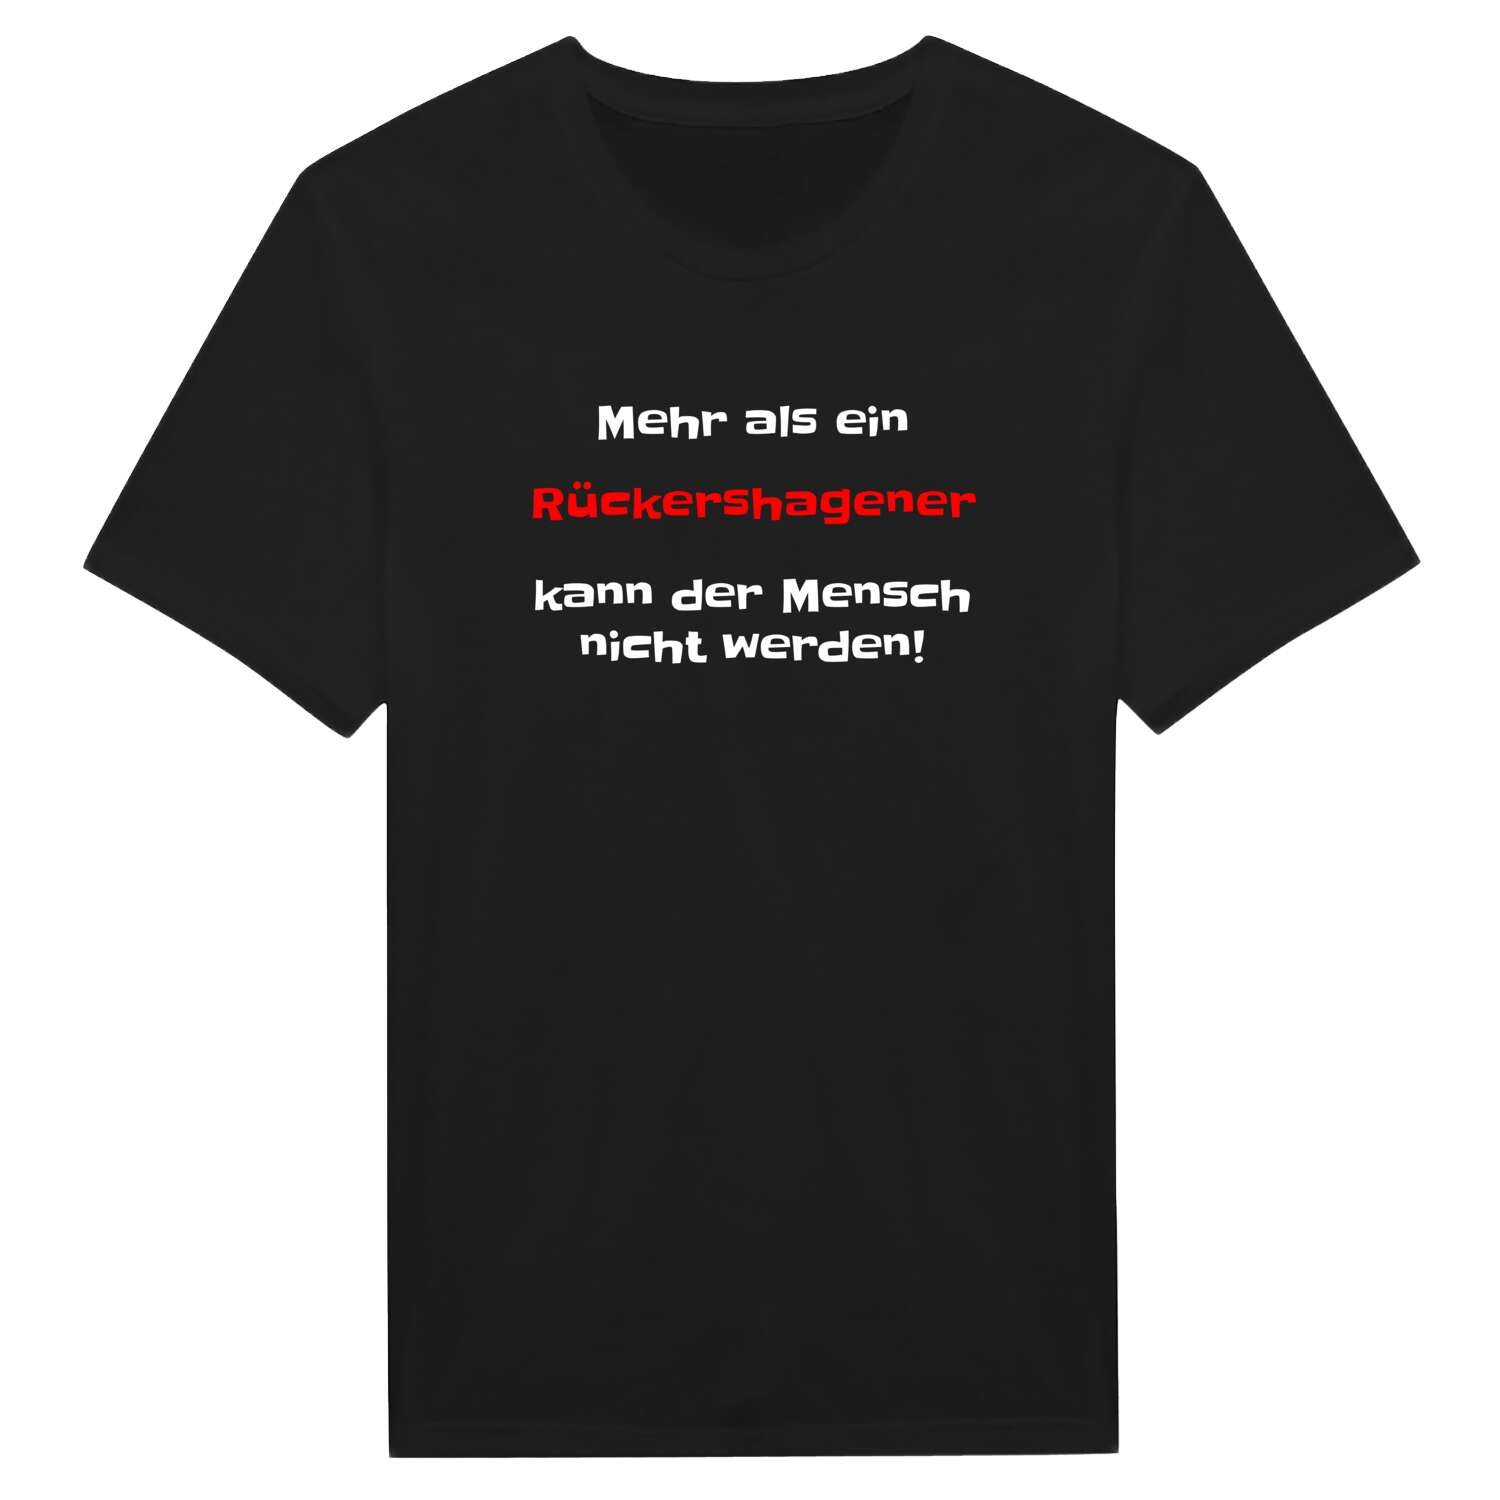 Rückershagen T-Shirt »Mehr als ein«